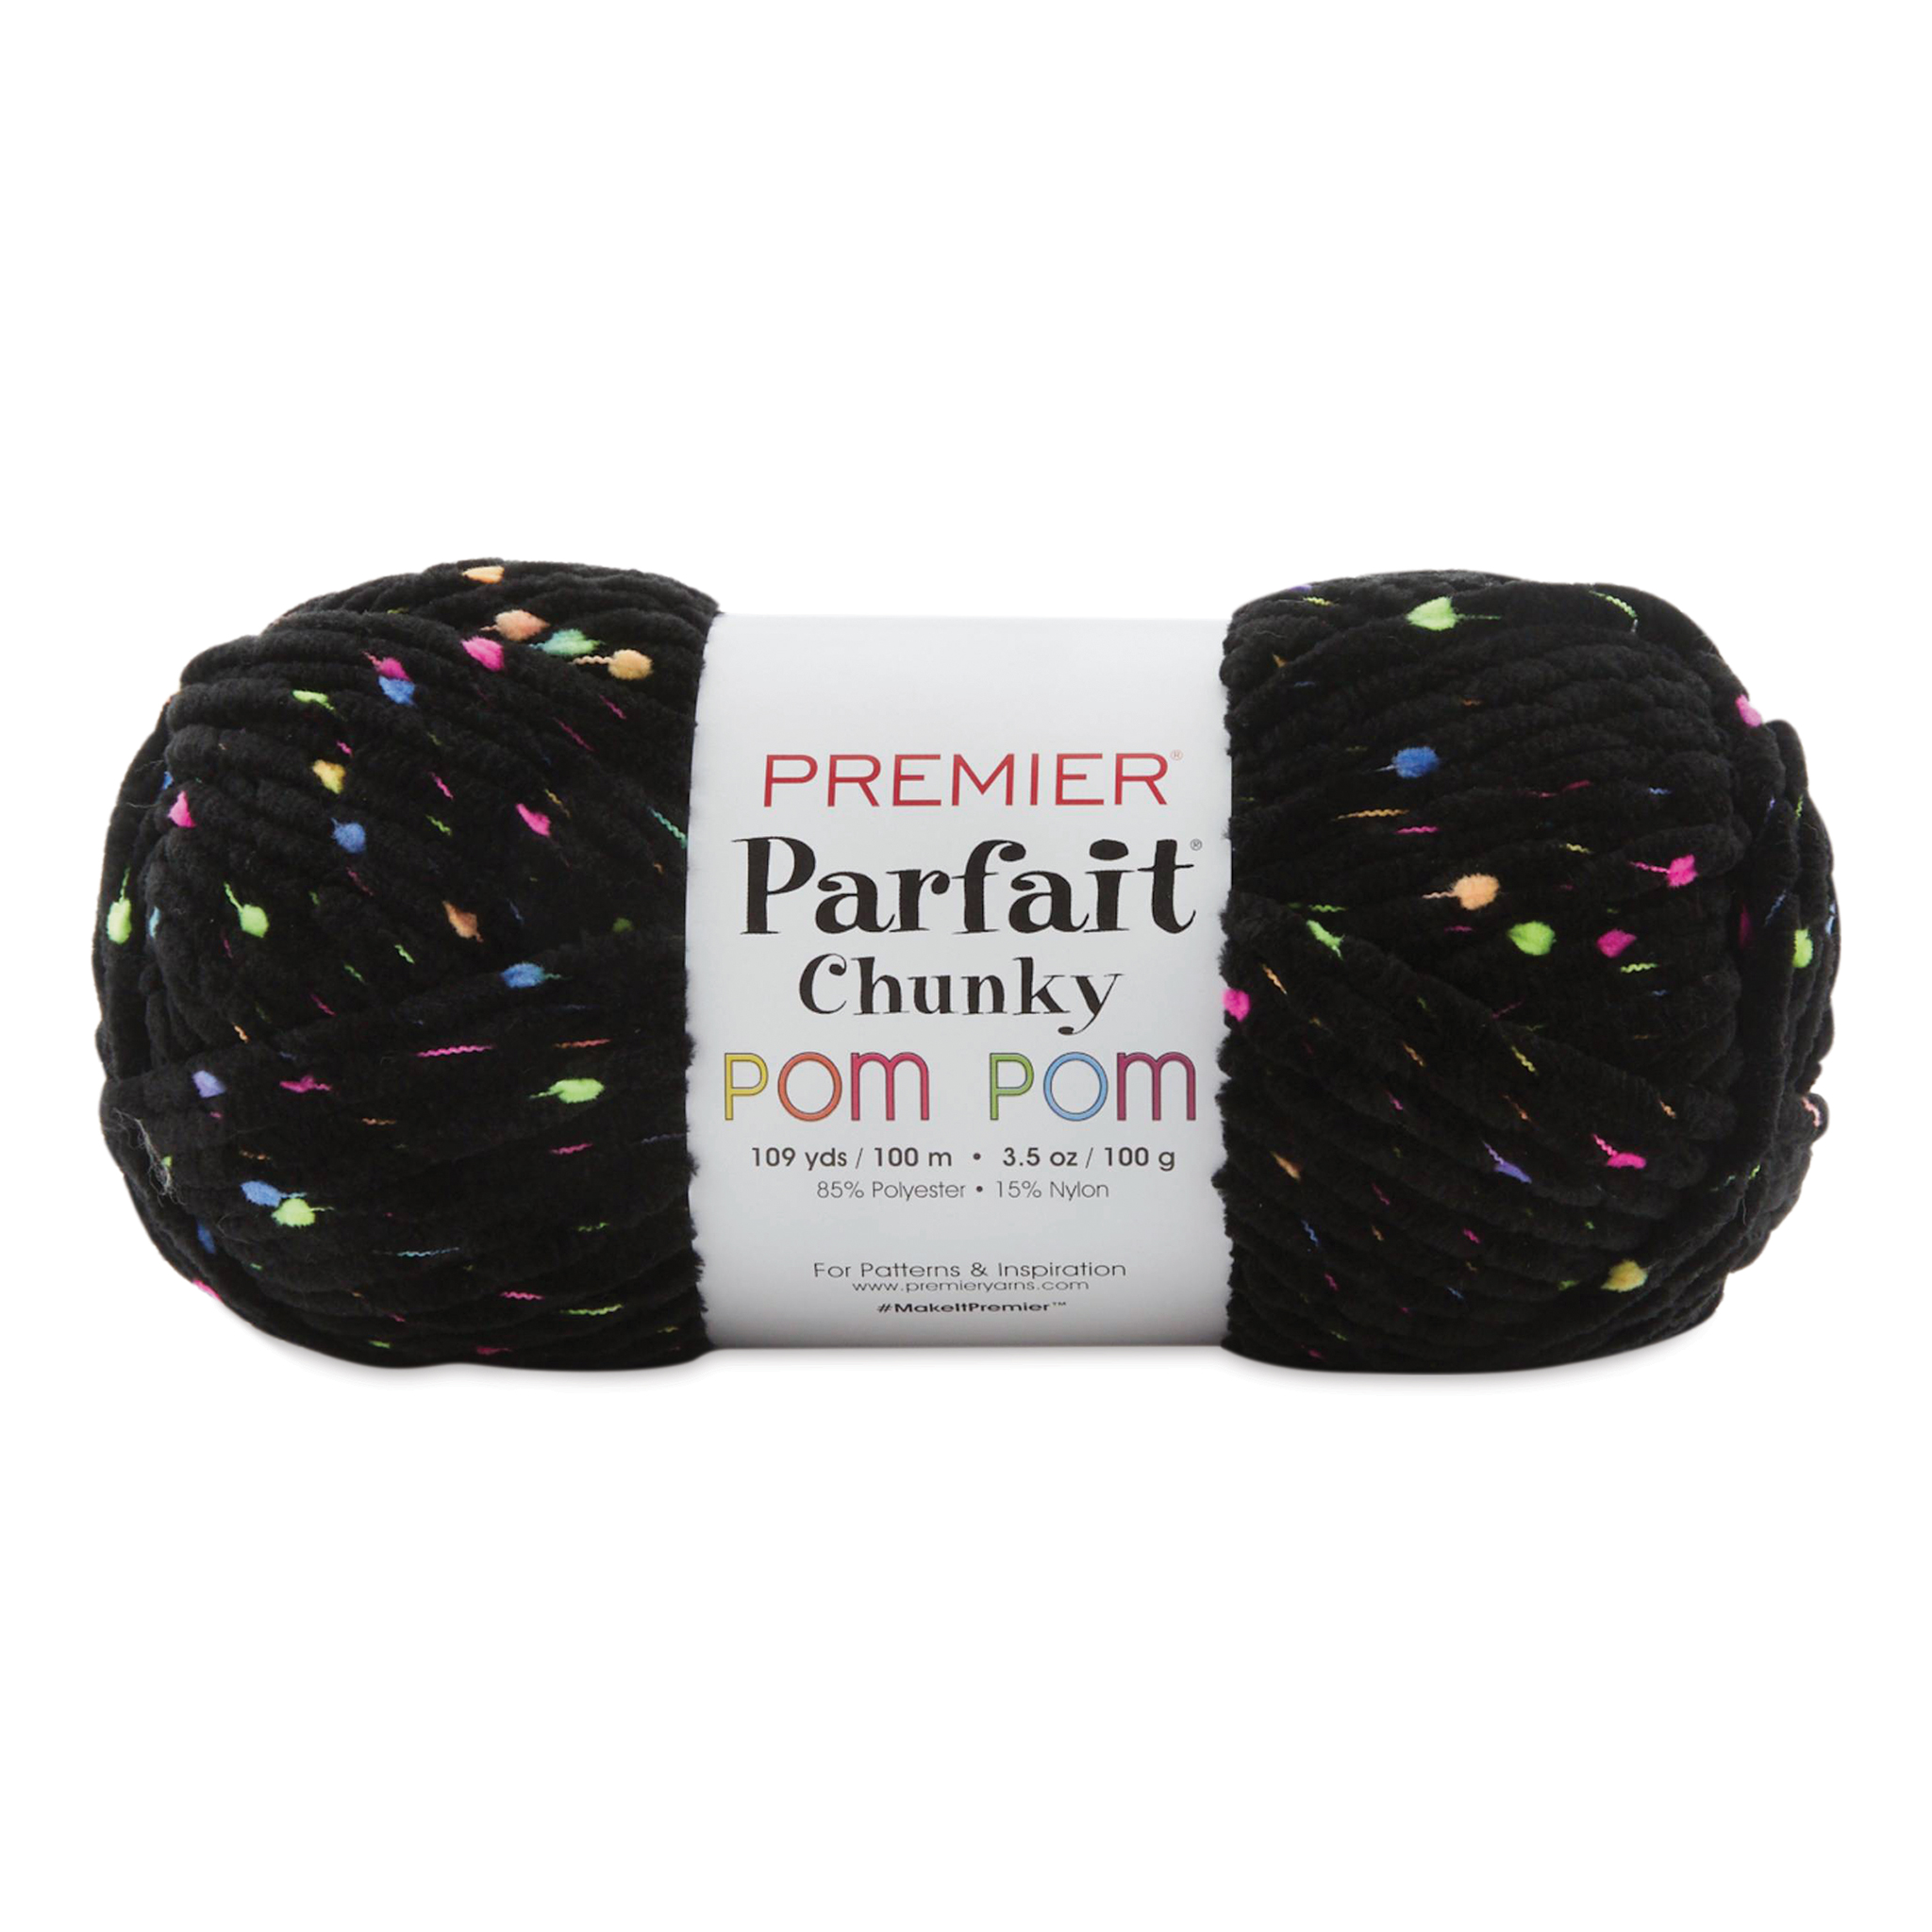 Premier Parfait Chunky POM POM Yarn, Pom Pom Parfait Yarn – ASA College:  Florida